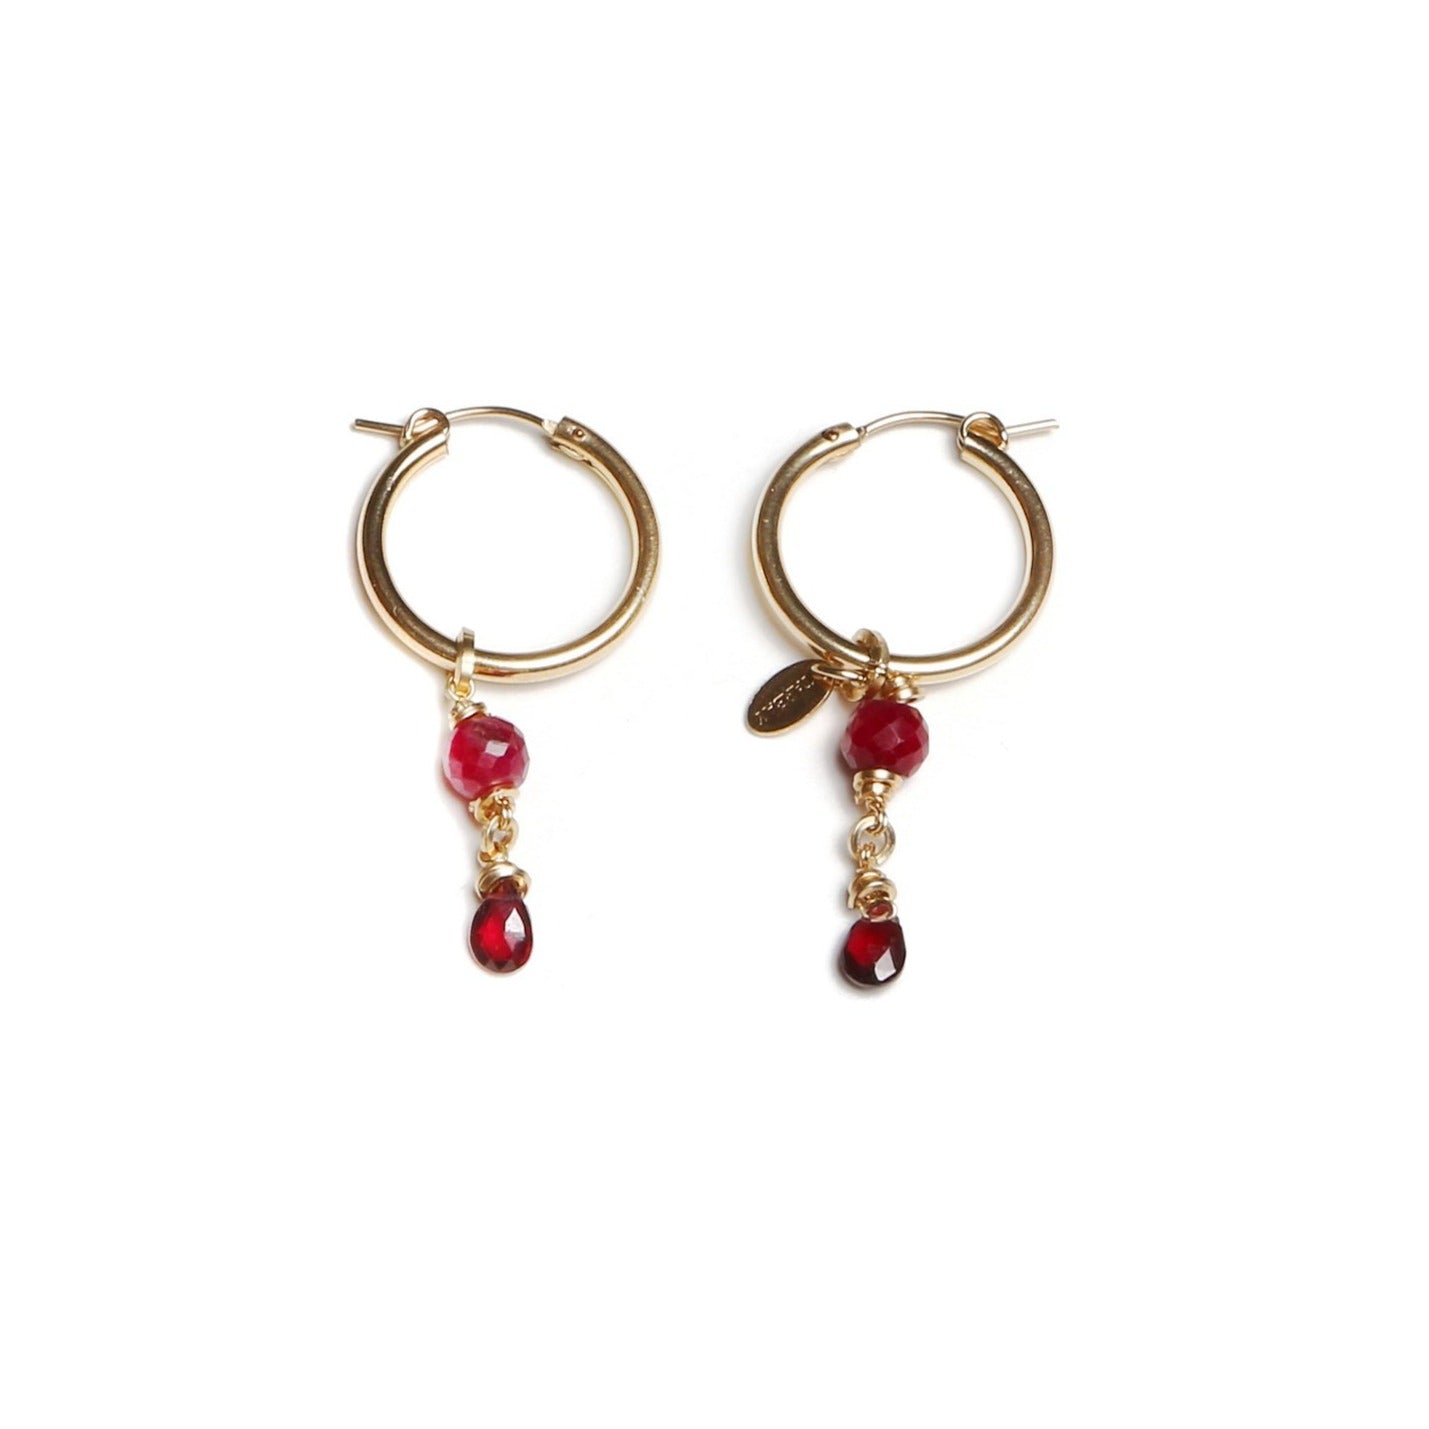 Christine Earring (50mm) - Garnet & Ruby Earrings TARBAY   